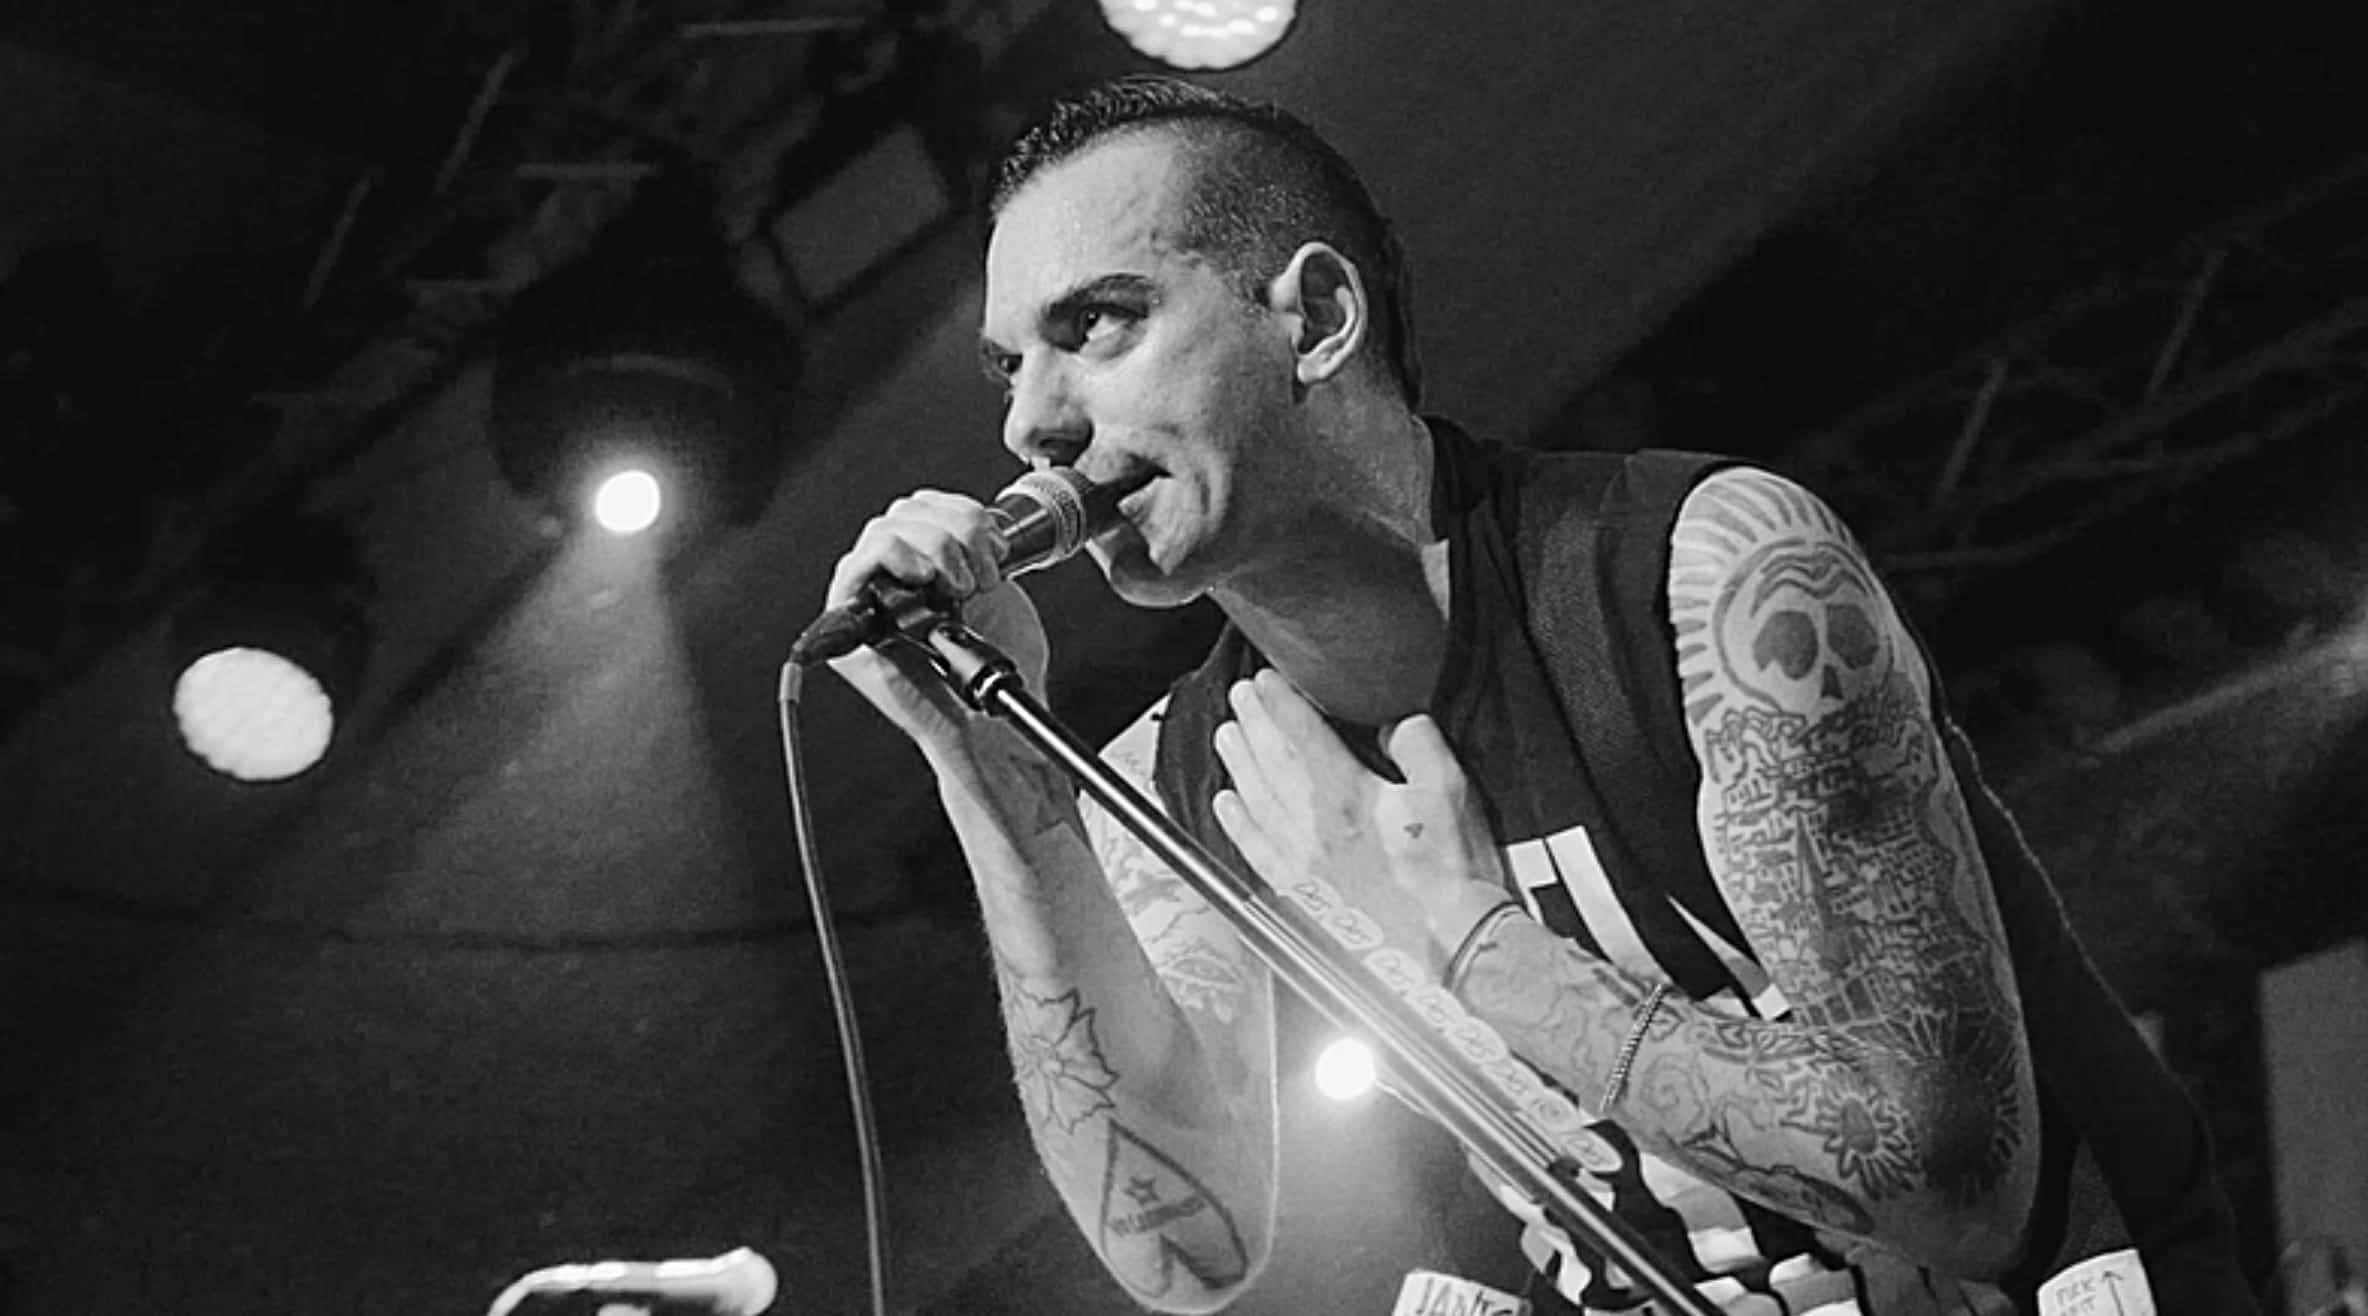 Anti-Flag: Power to the Peaceful Dokumentarfilm, Band Story, EPK - Artist singt auf der Bühne -Filmproduktion hawkins.film